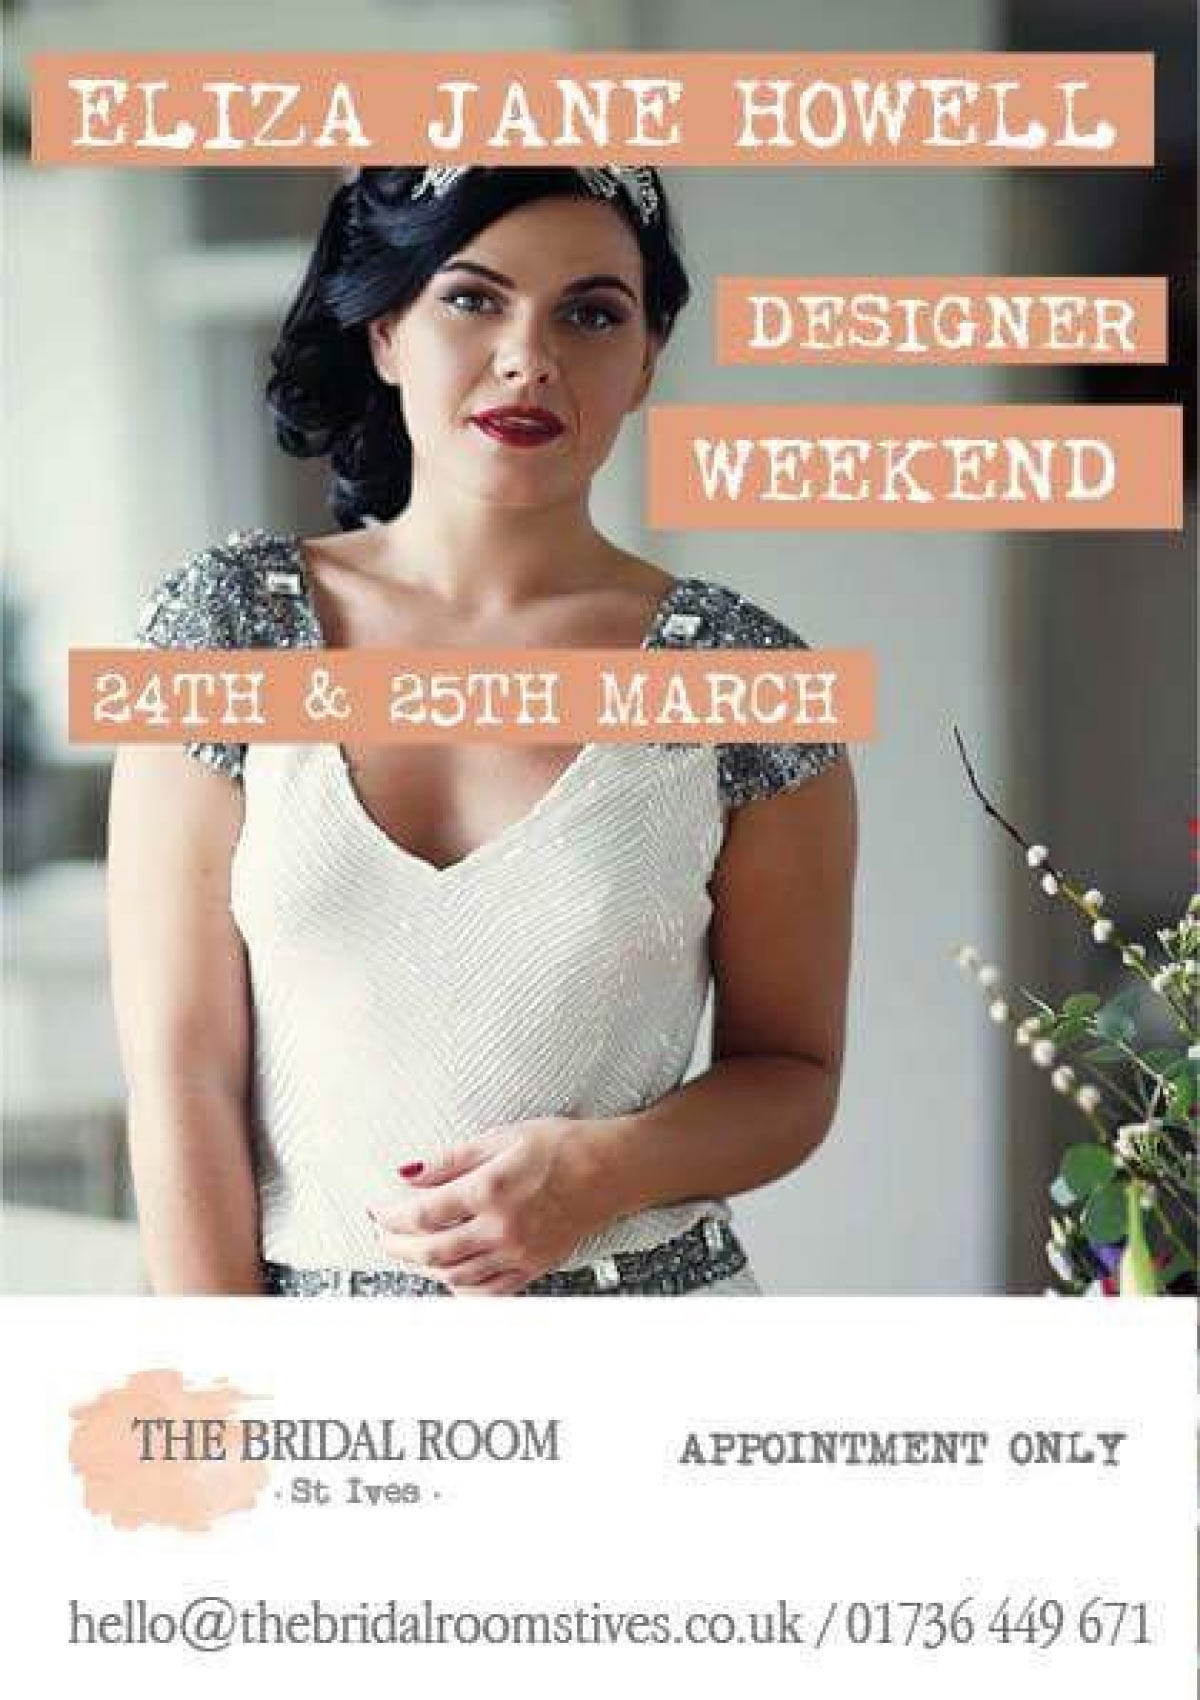 Eliza Jane Howell Designer Weekend at The Bridal Room St Ives